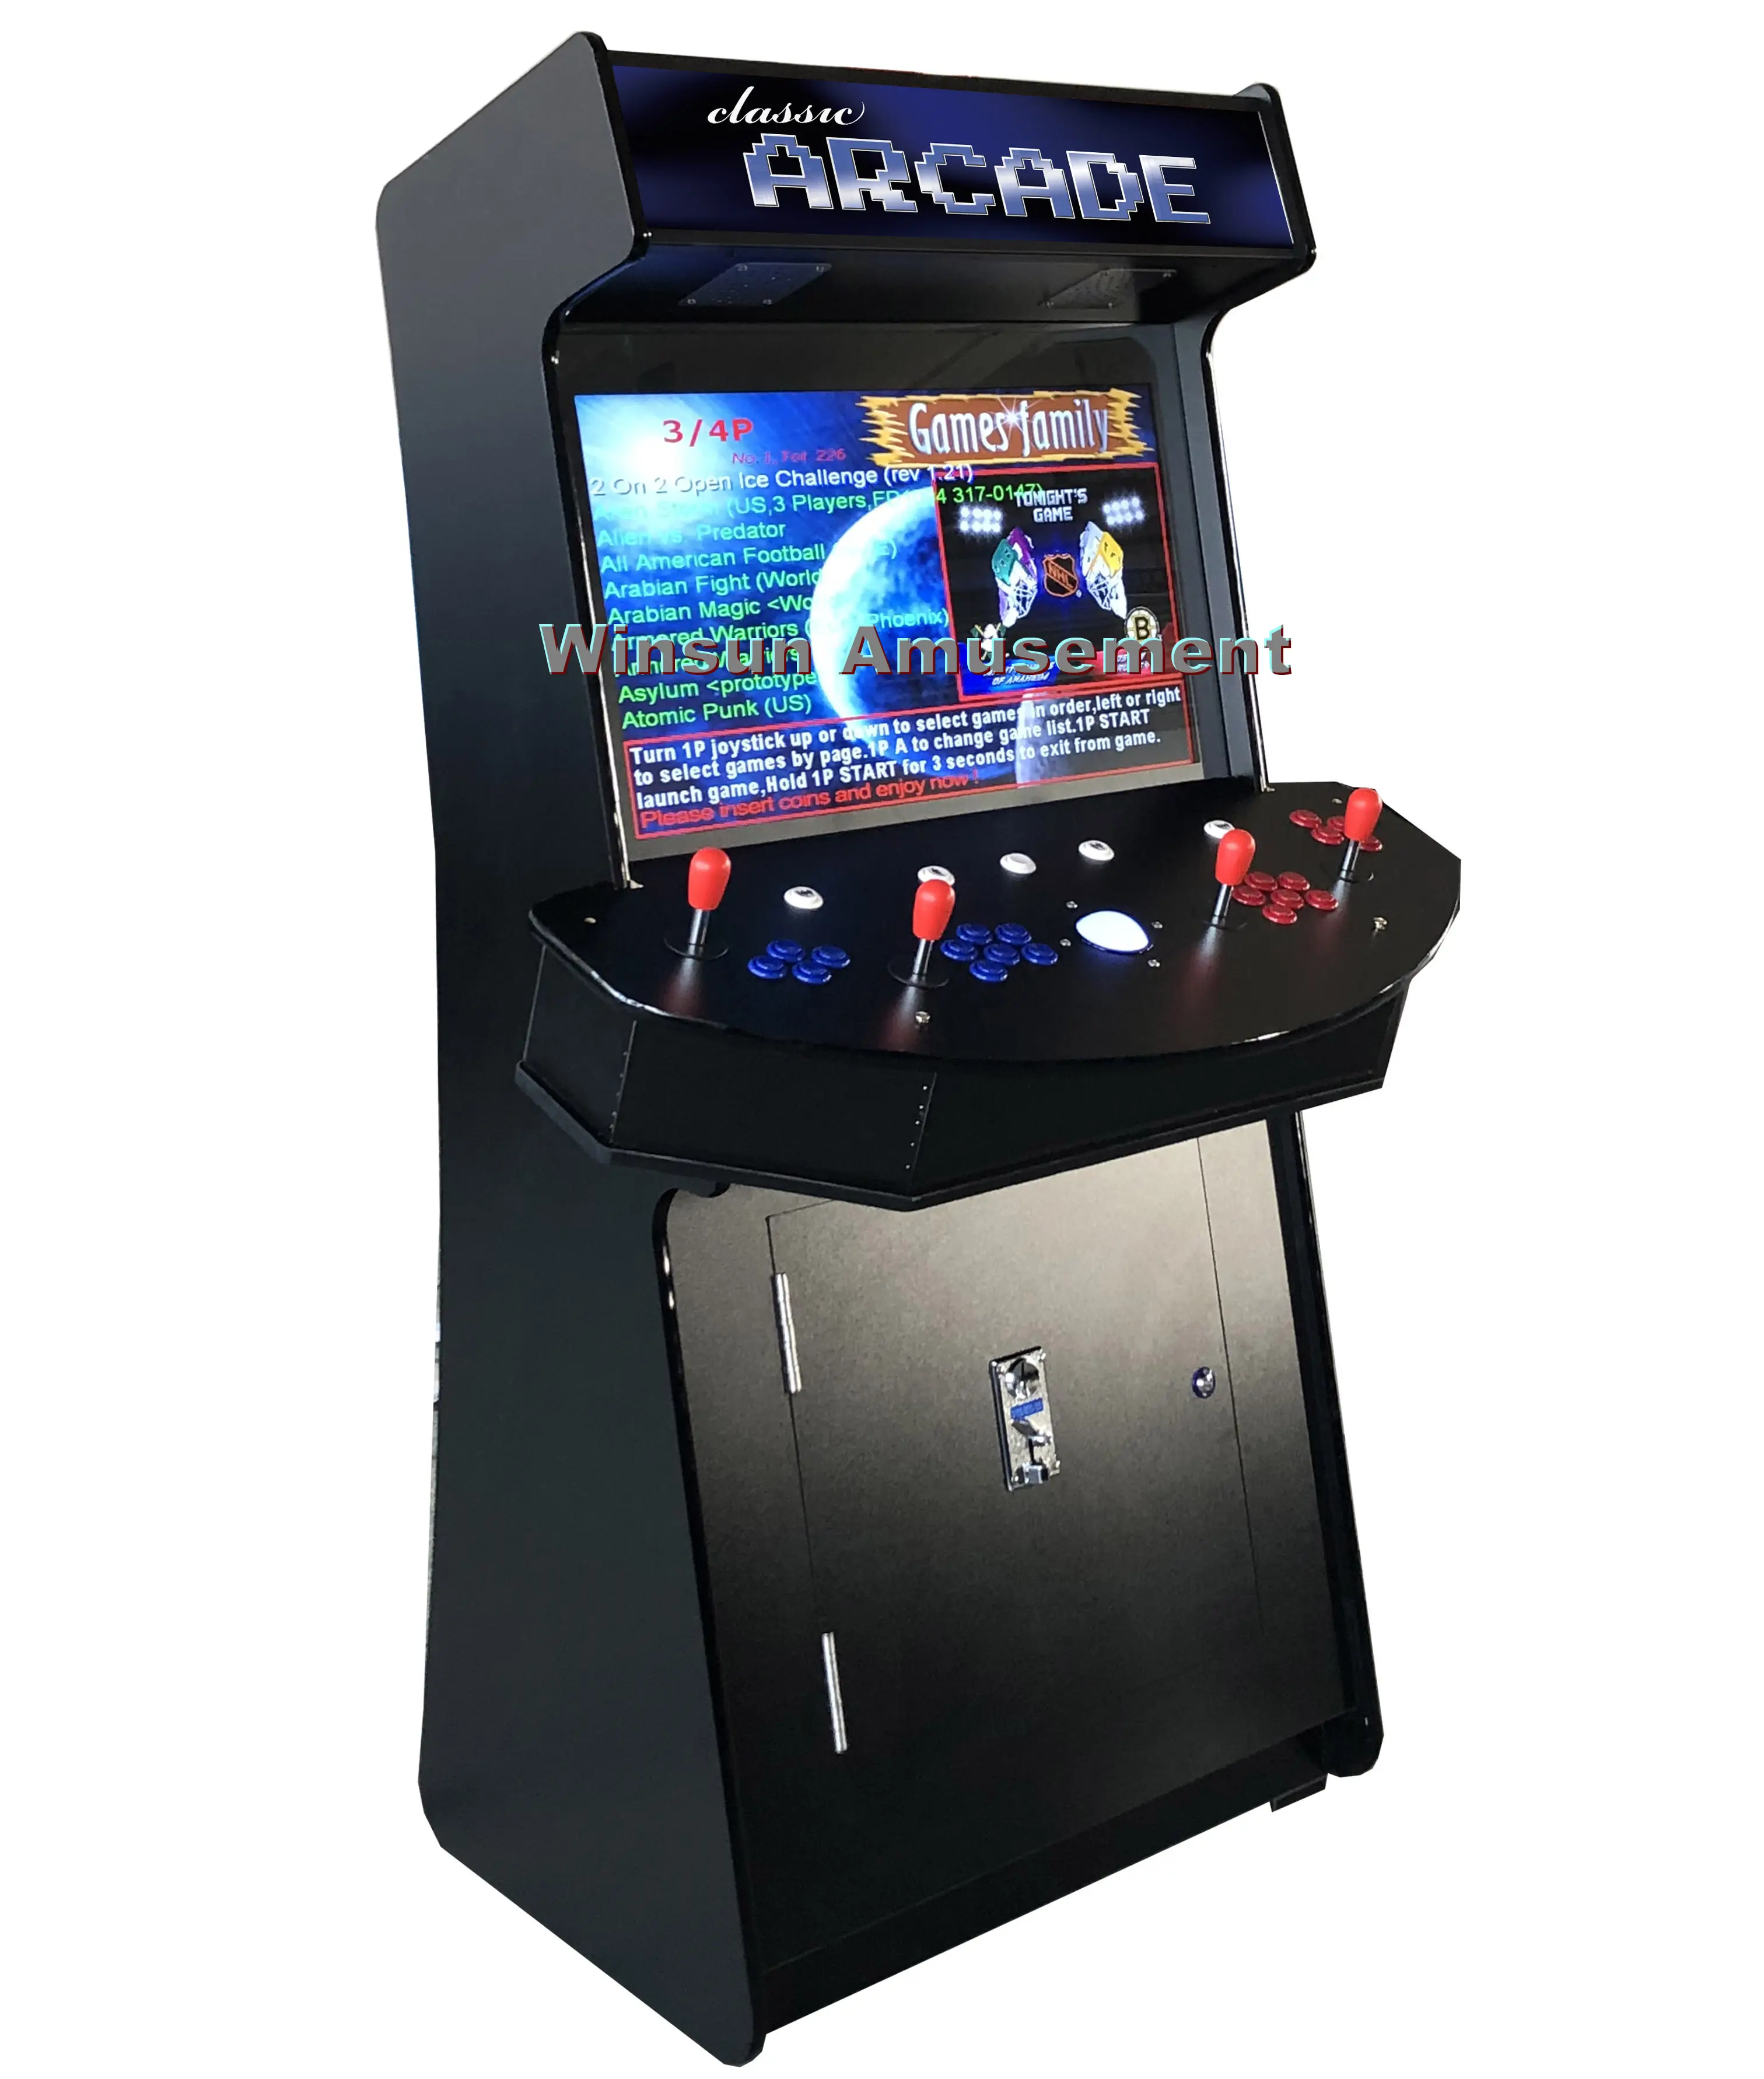 4 spieler Schlank aufrecht arcade maschine mit 3500 Spiele und große trackball